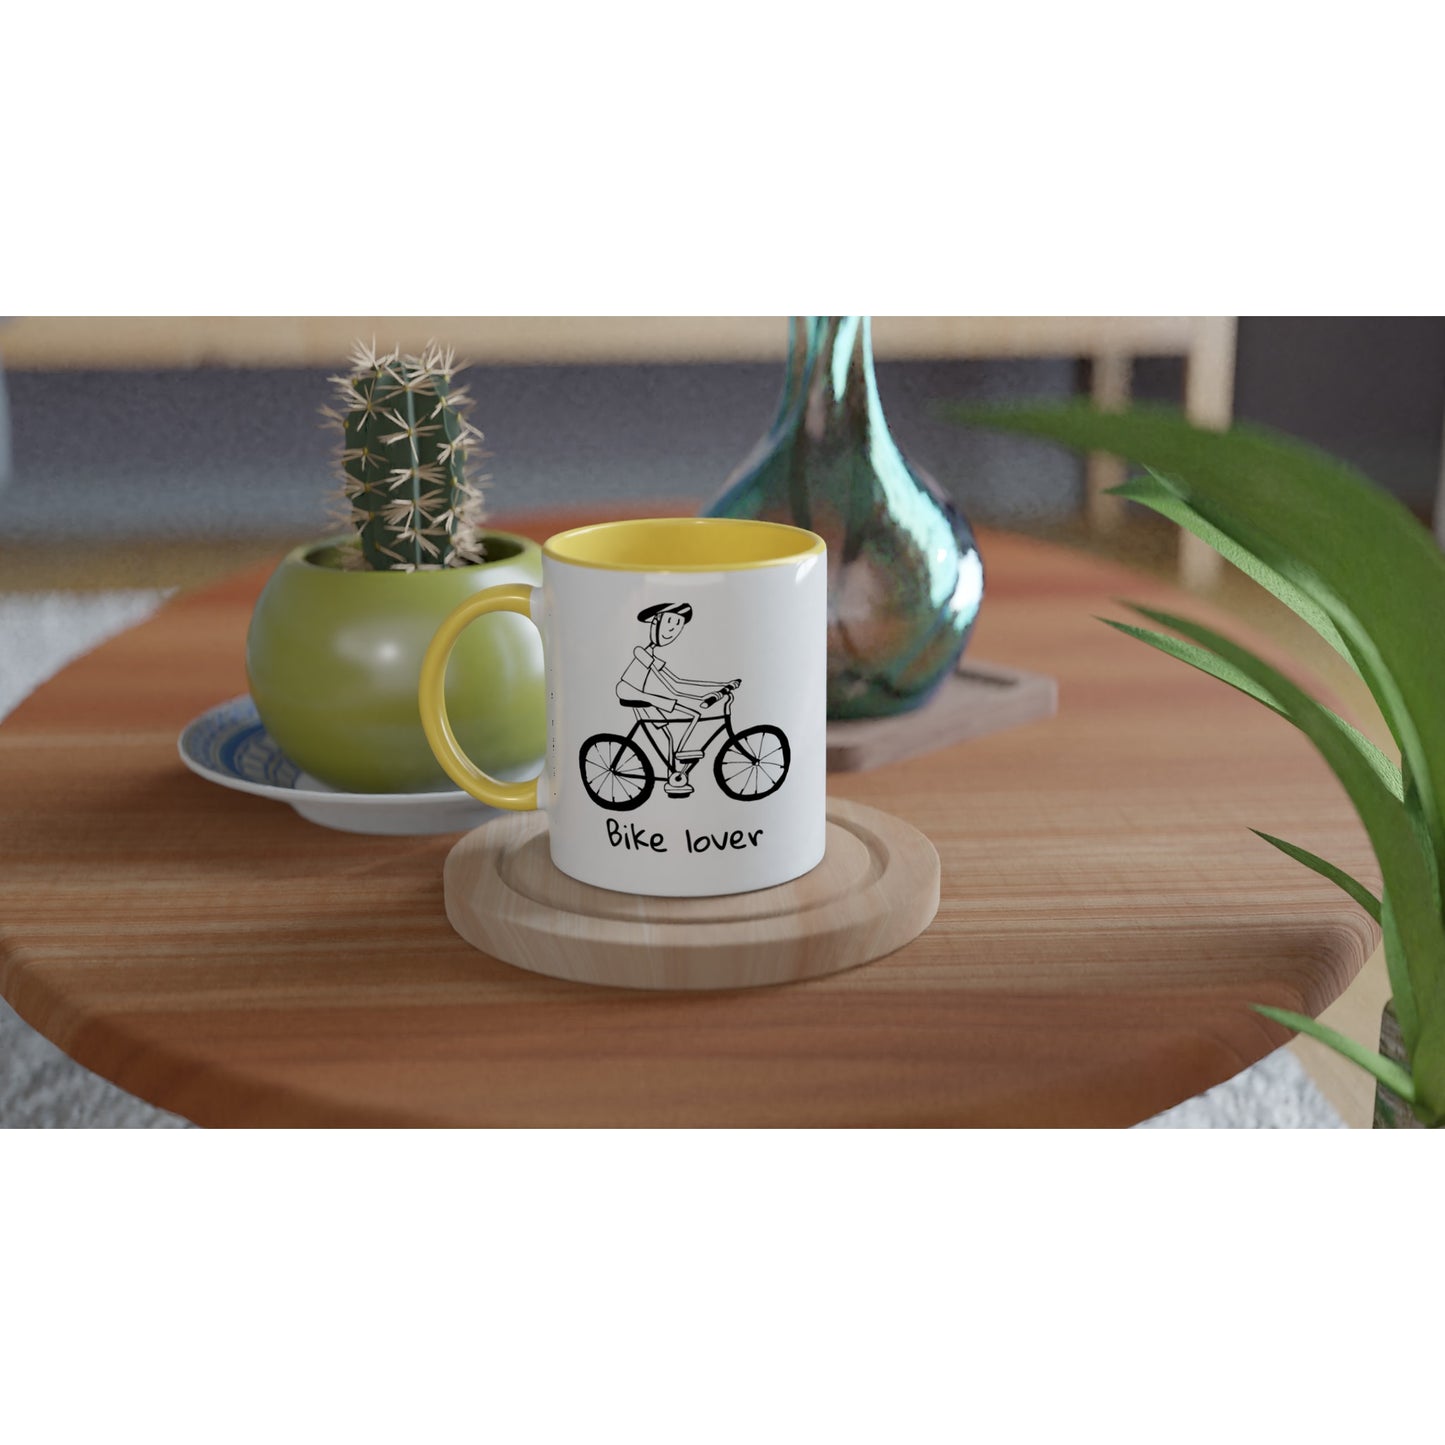 Bike lover ceramic mug - mens